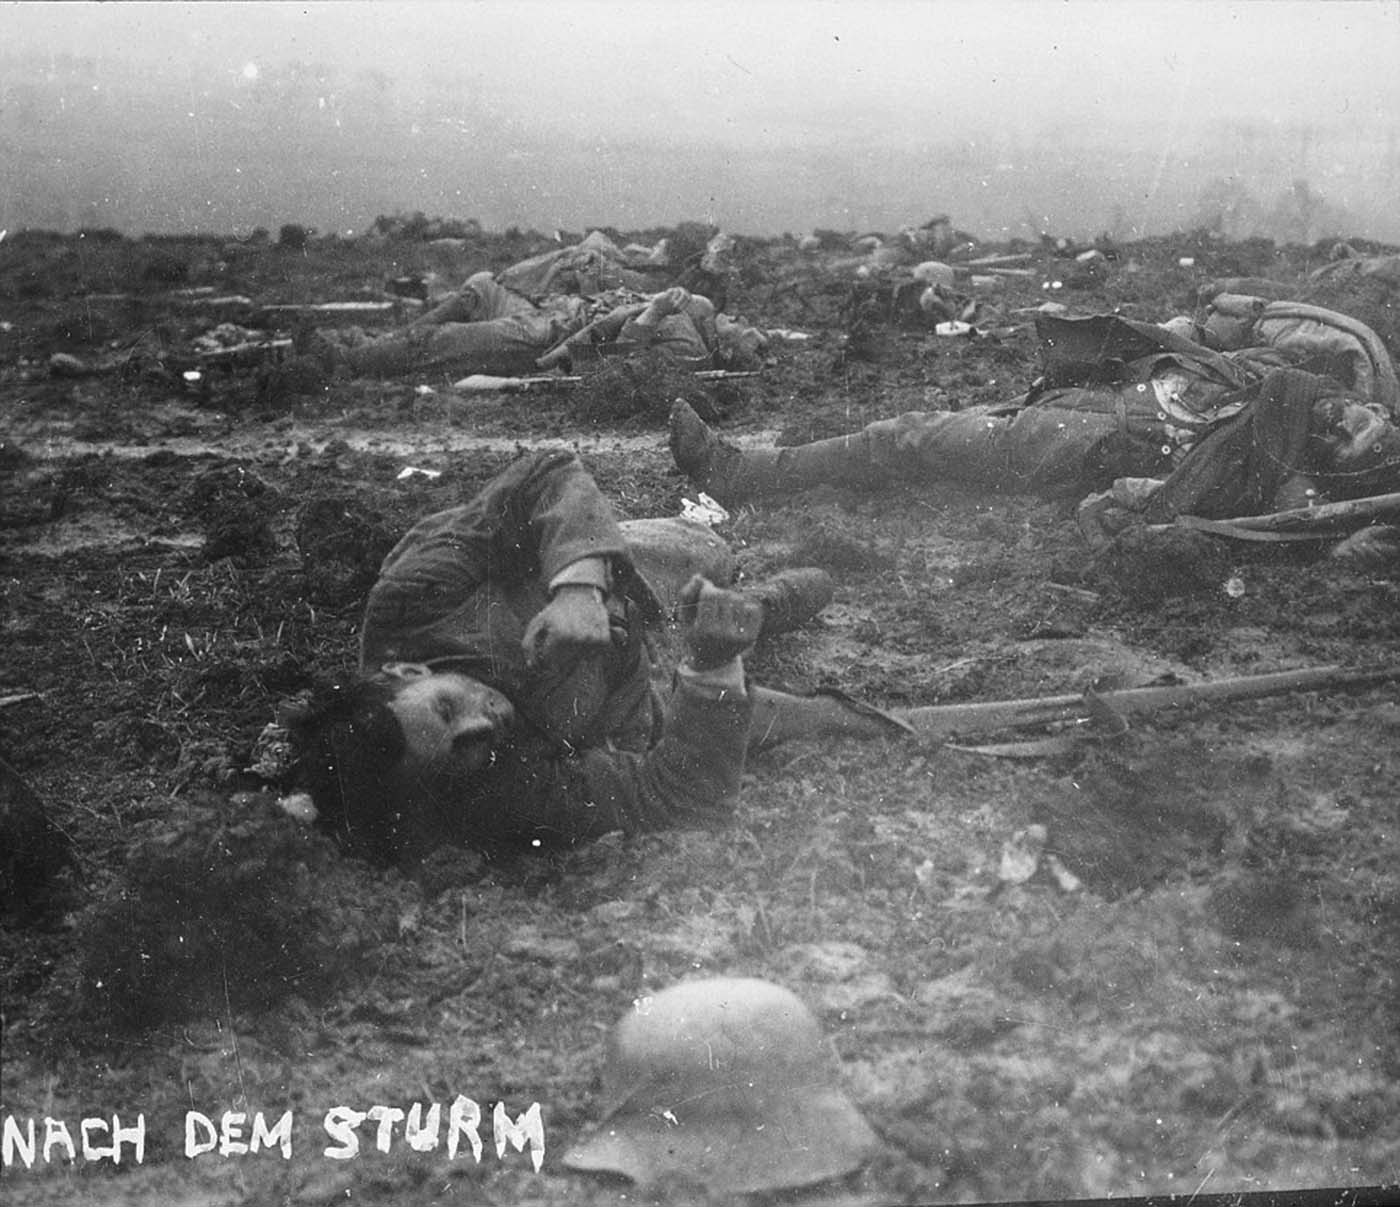 Walter Kleinfeldt de l'album montre les effets d'une escarmouche au cours de la Bataille de la Somme, 1916